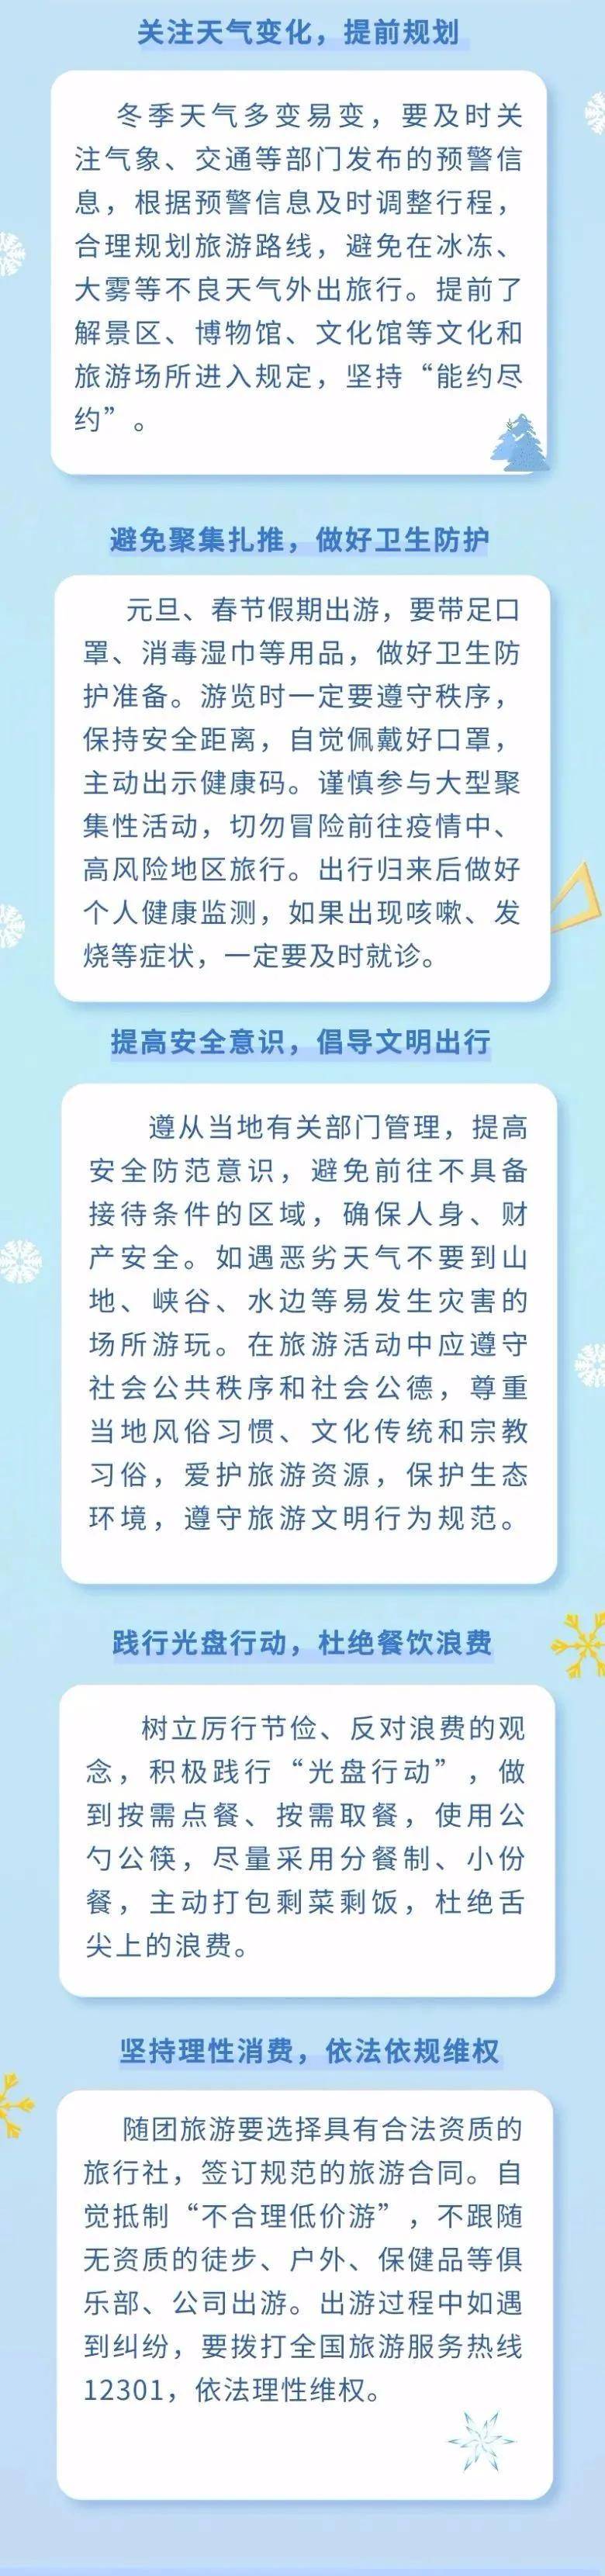 2021年元旦春节安全出游提示